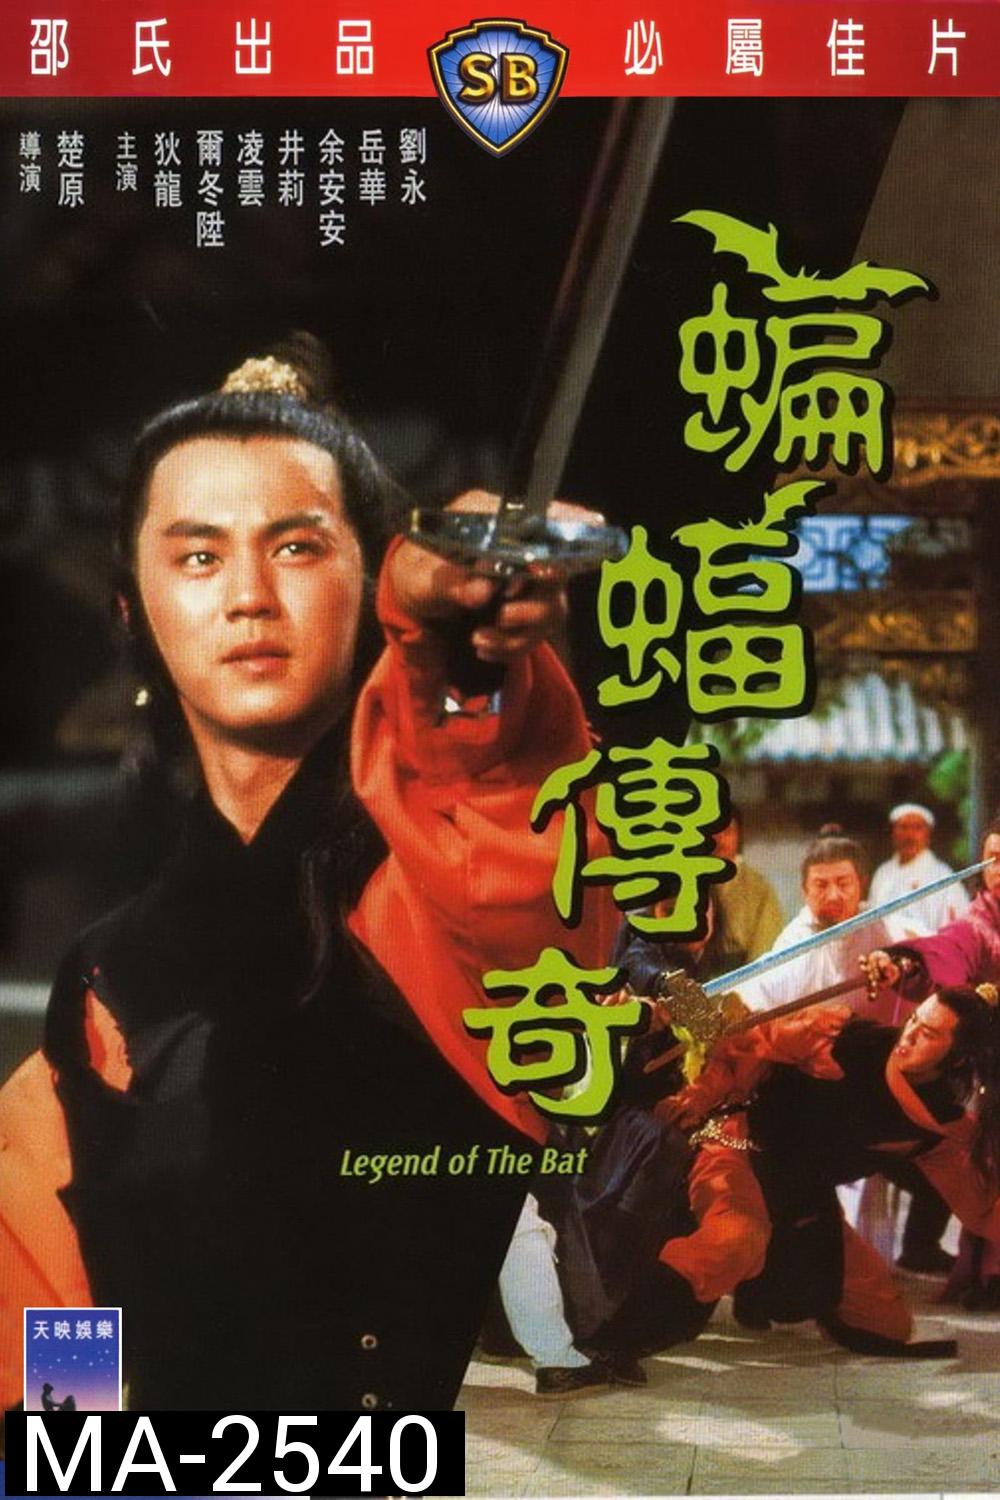 Legend of the Bat (1978) ชอลิ้วเฮียง ศึกถล่มวังค้างคาว